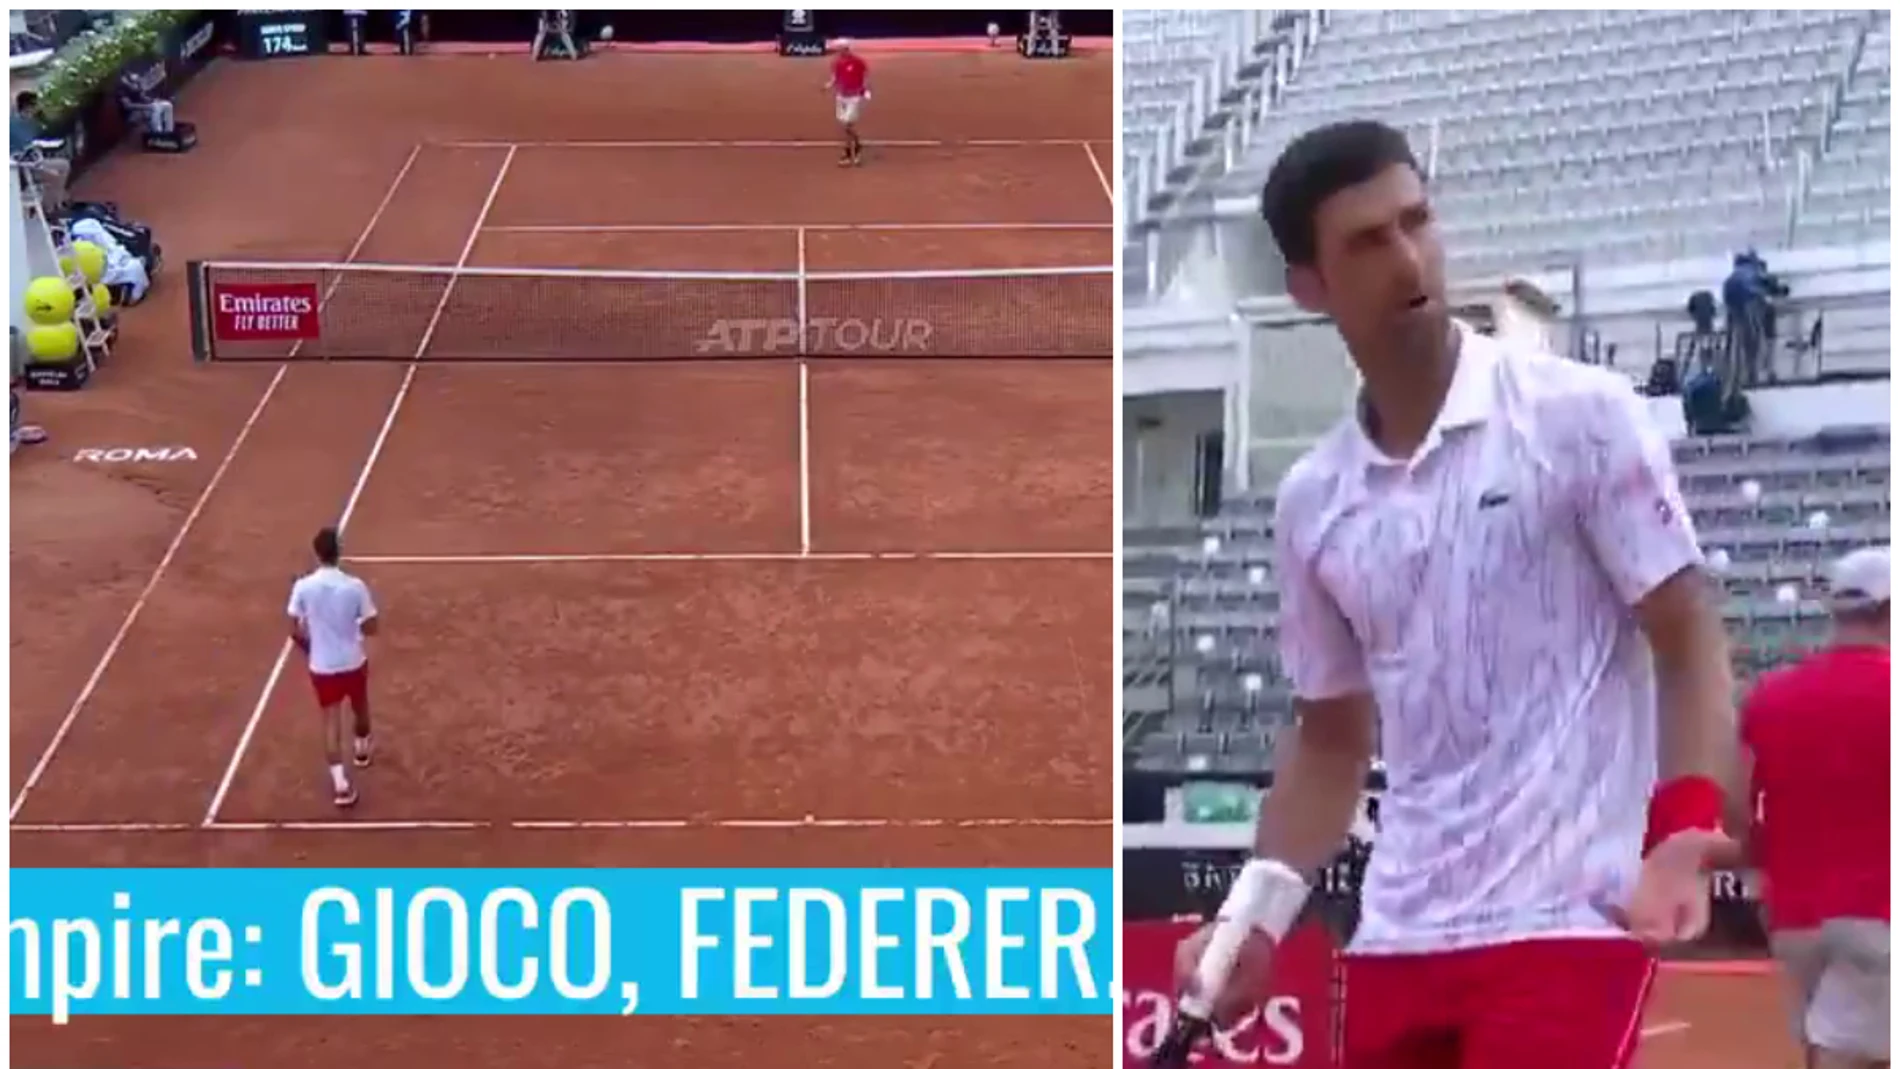 El juez de silla llama 'Federer' a Djokovic